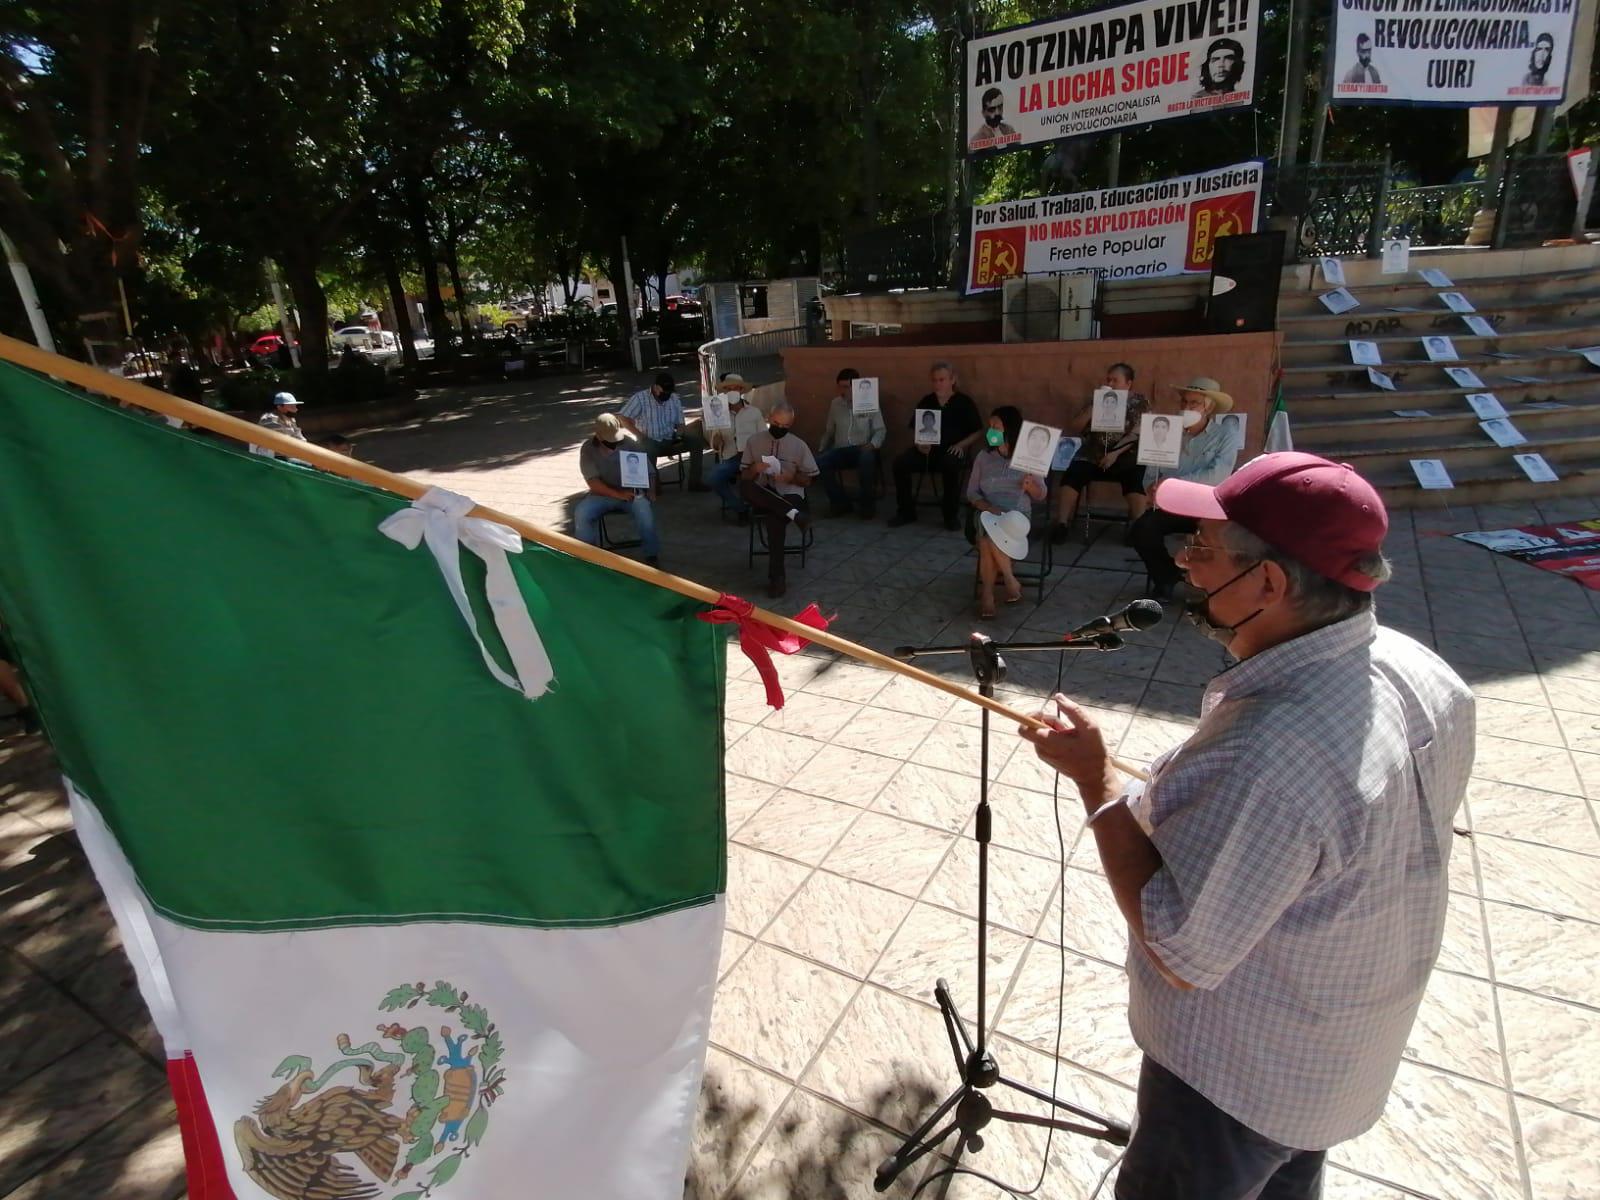 $!En Culiacán, recuerdan a los 43 normalistas de Ayotzinapa y exigen detener desapariciones